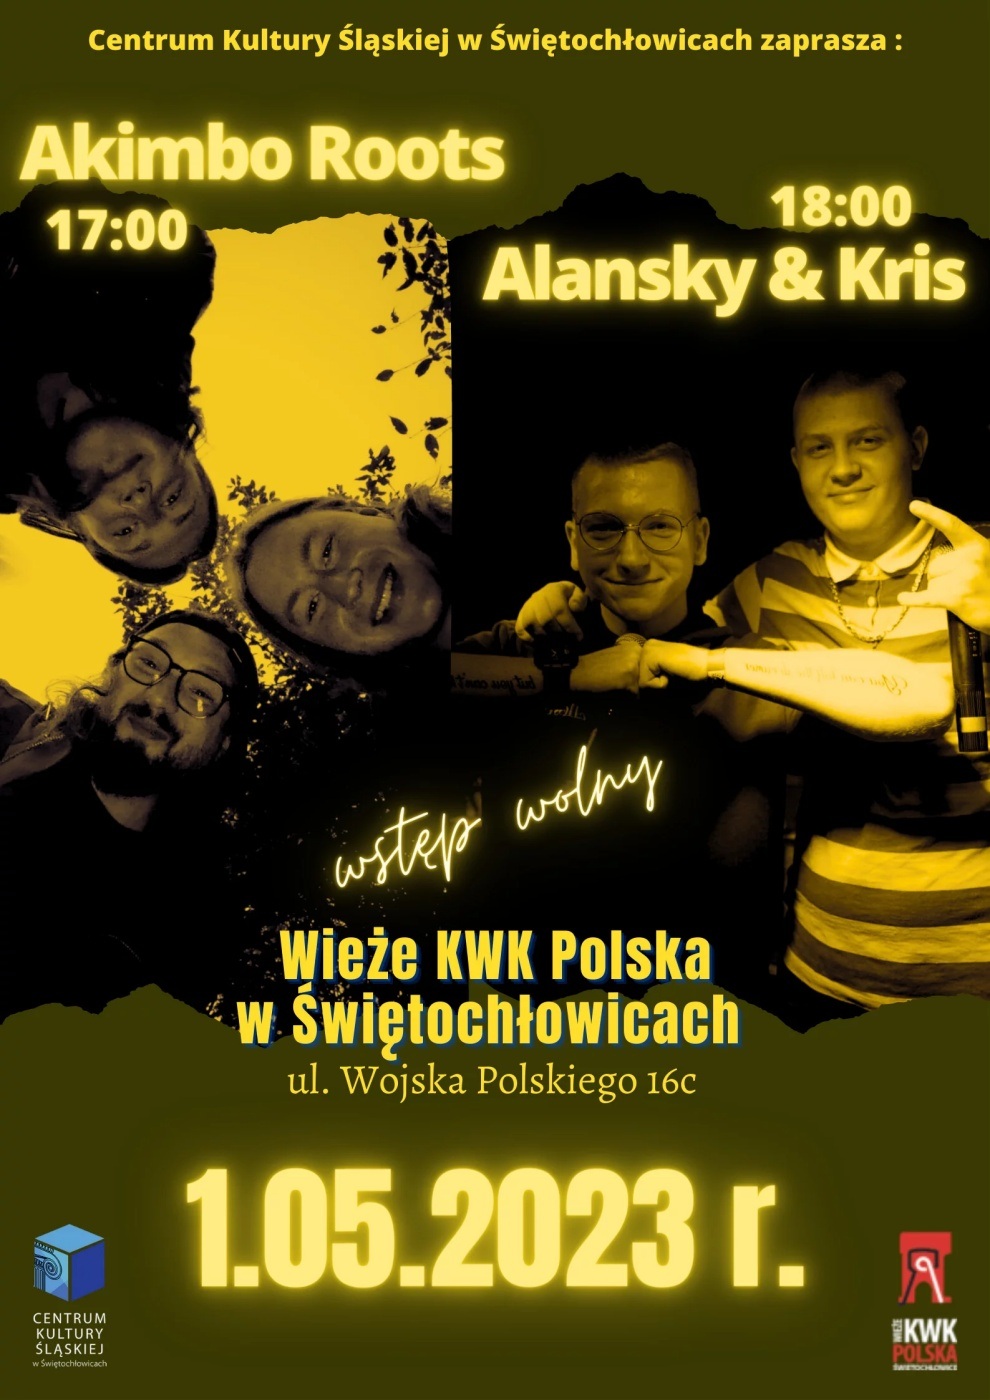 Plenerowe koncerty przy wieżach KWK Polska